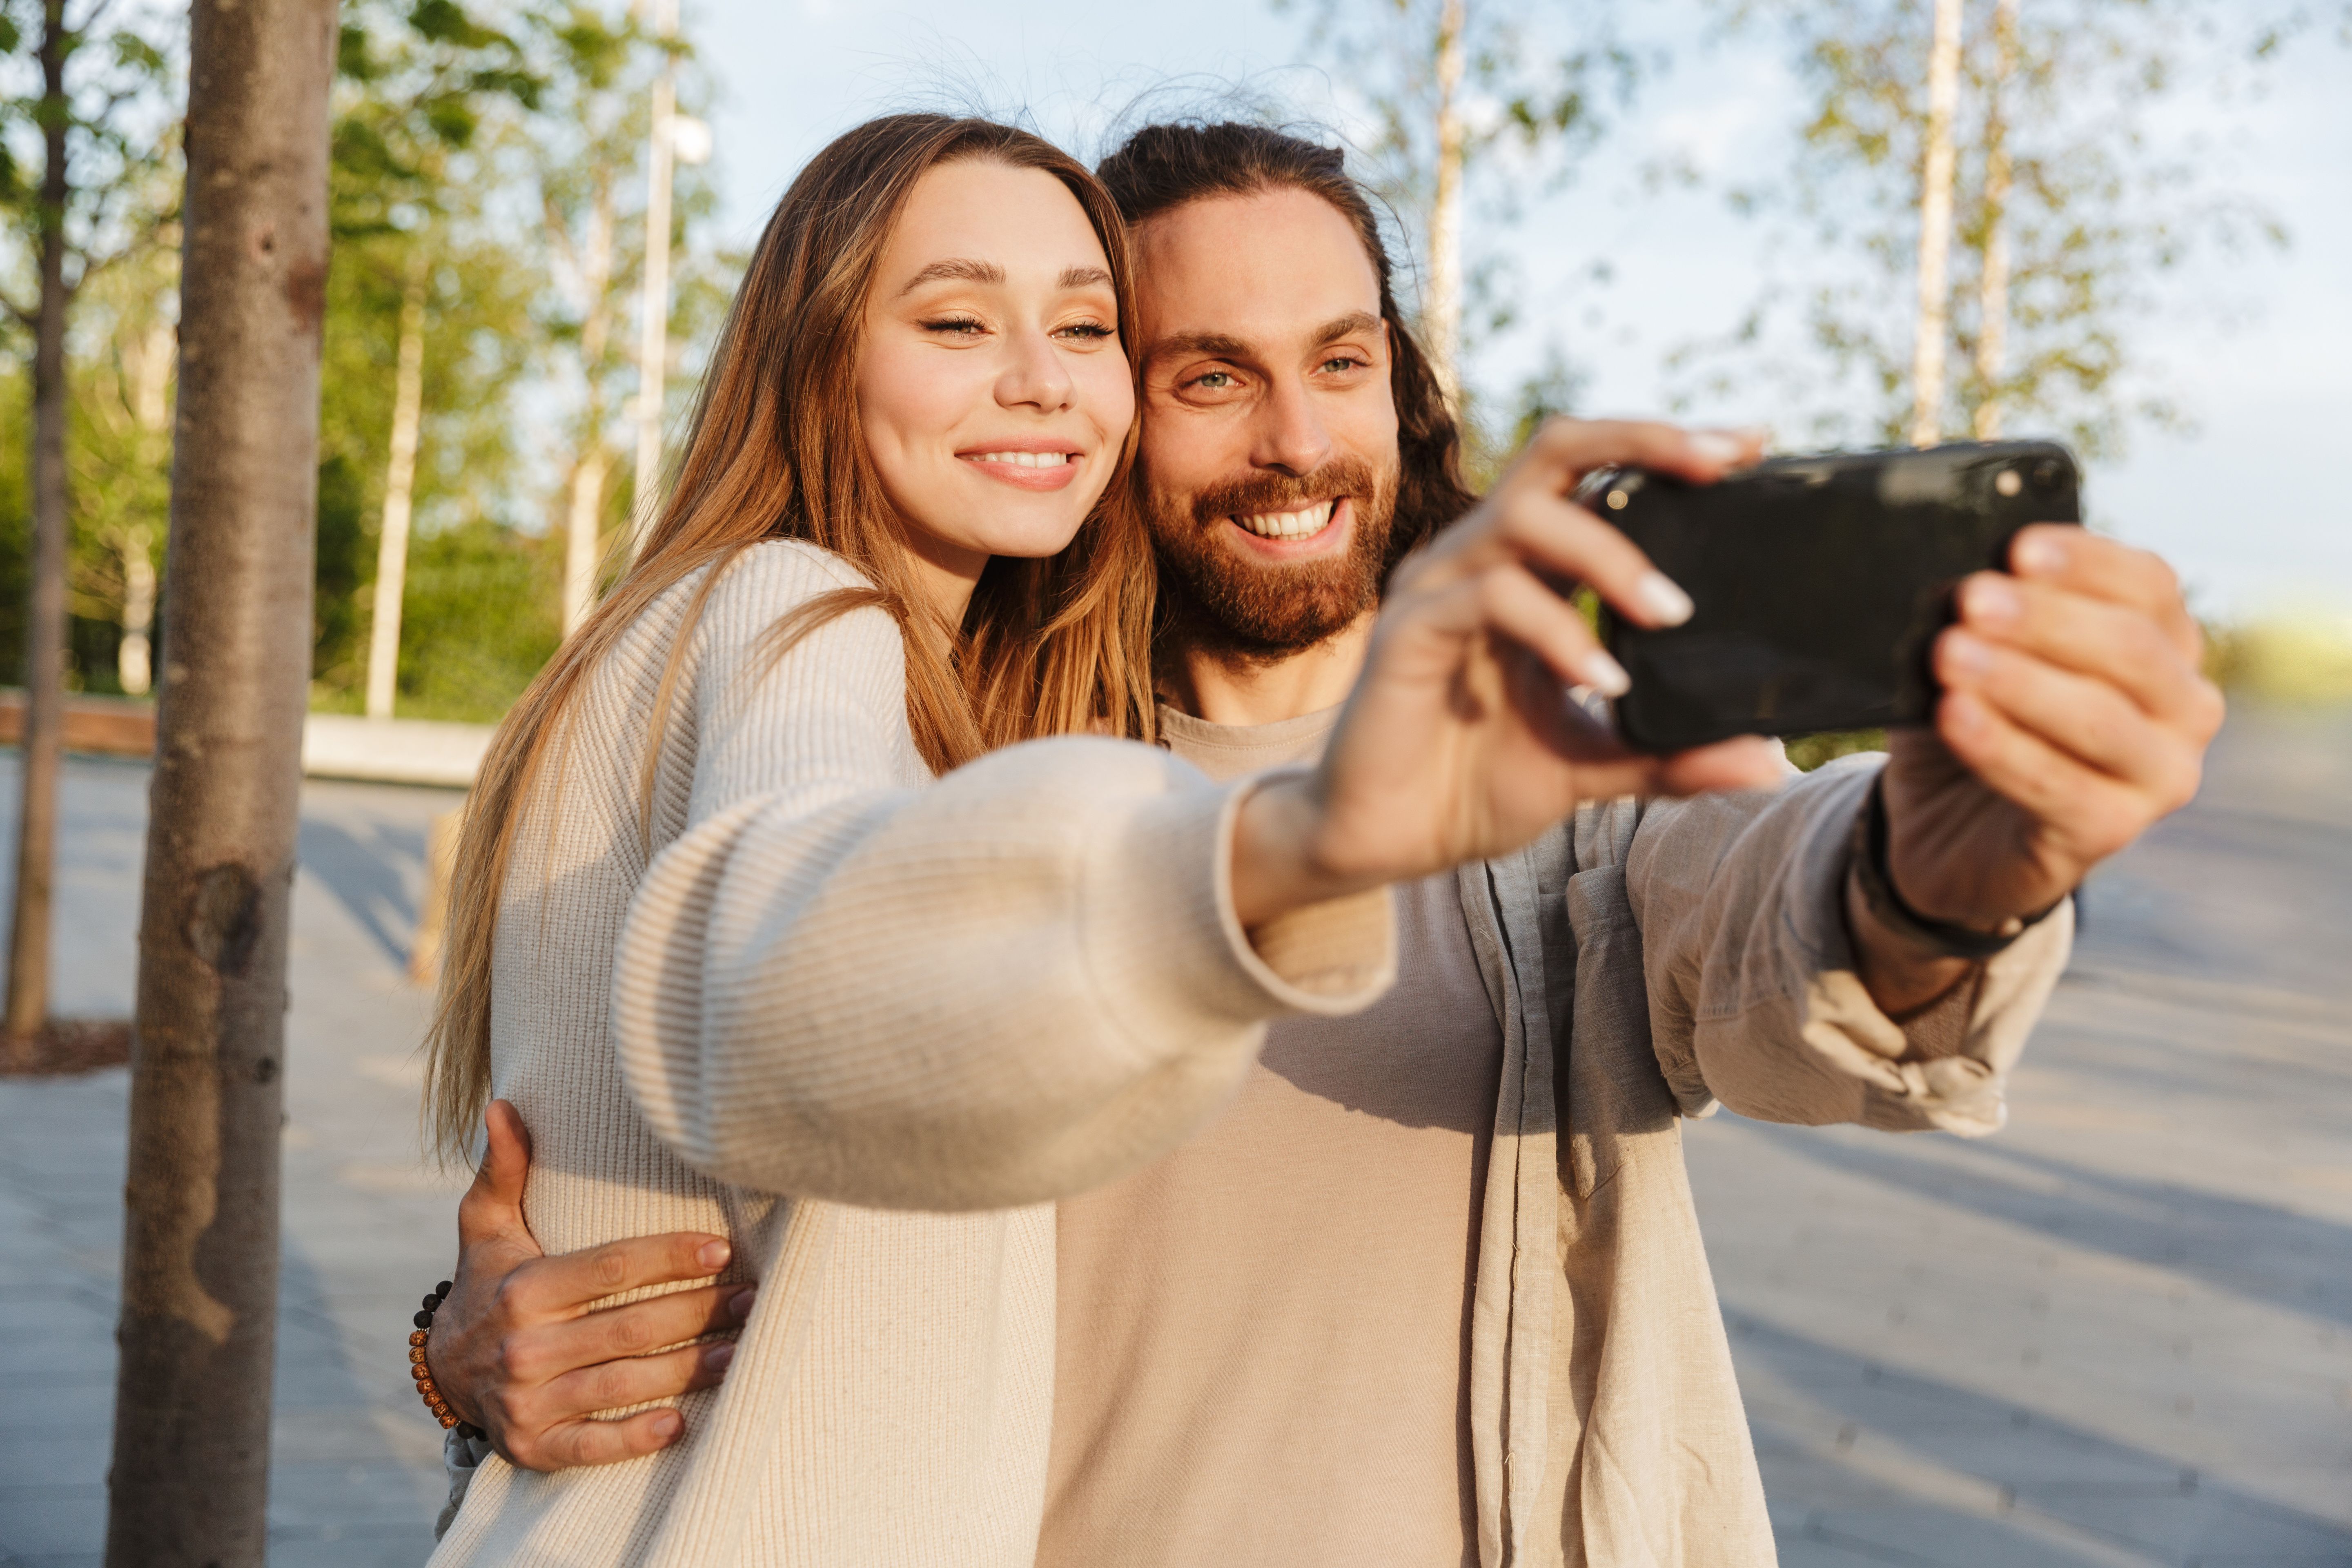 La selfie de una pareja puede expresar satisfacción, pero también puede ser un intento de salvar o proteger una relación.